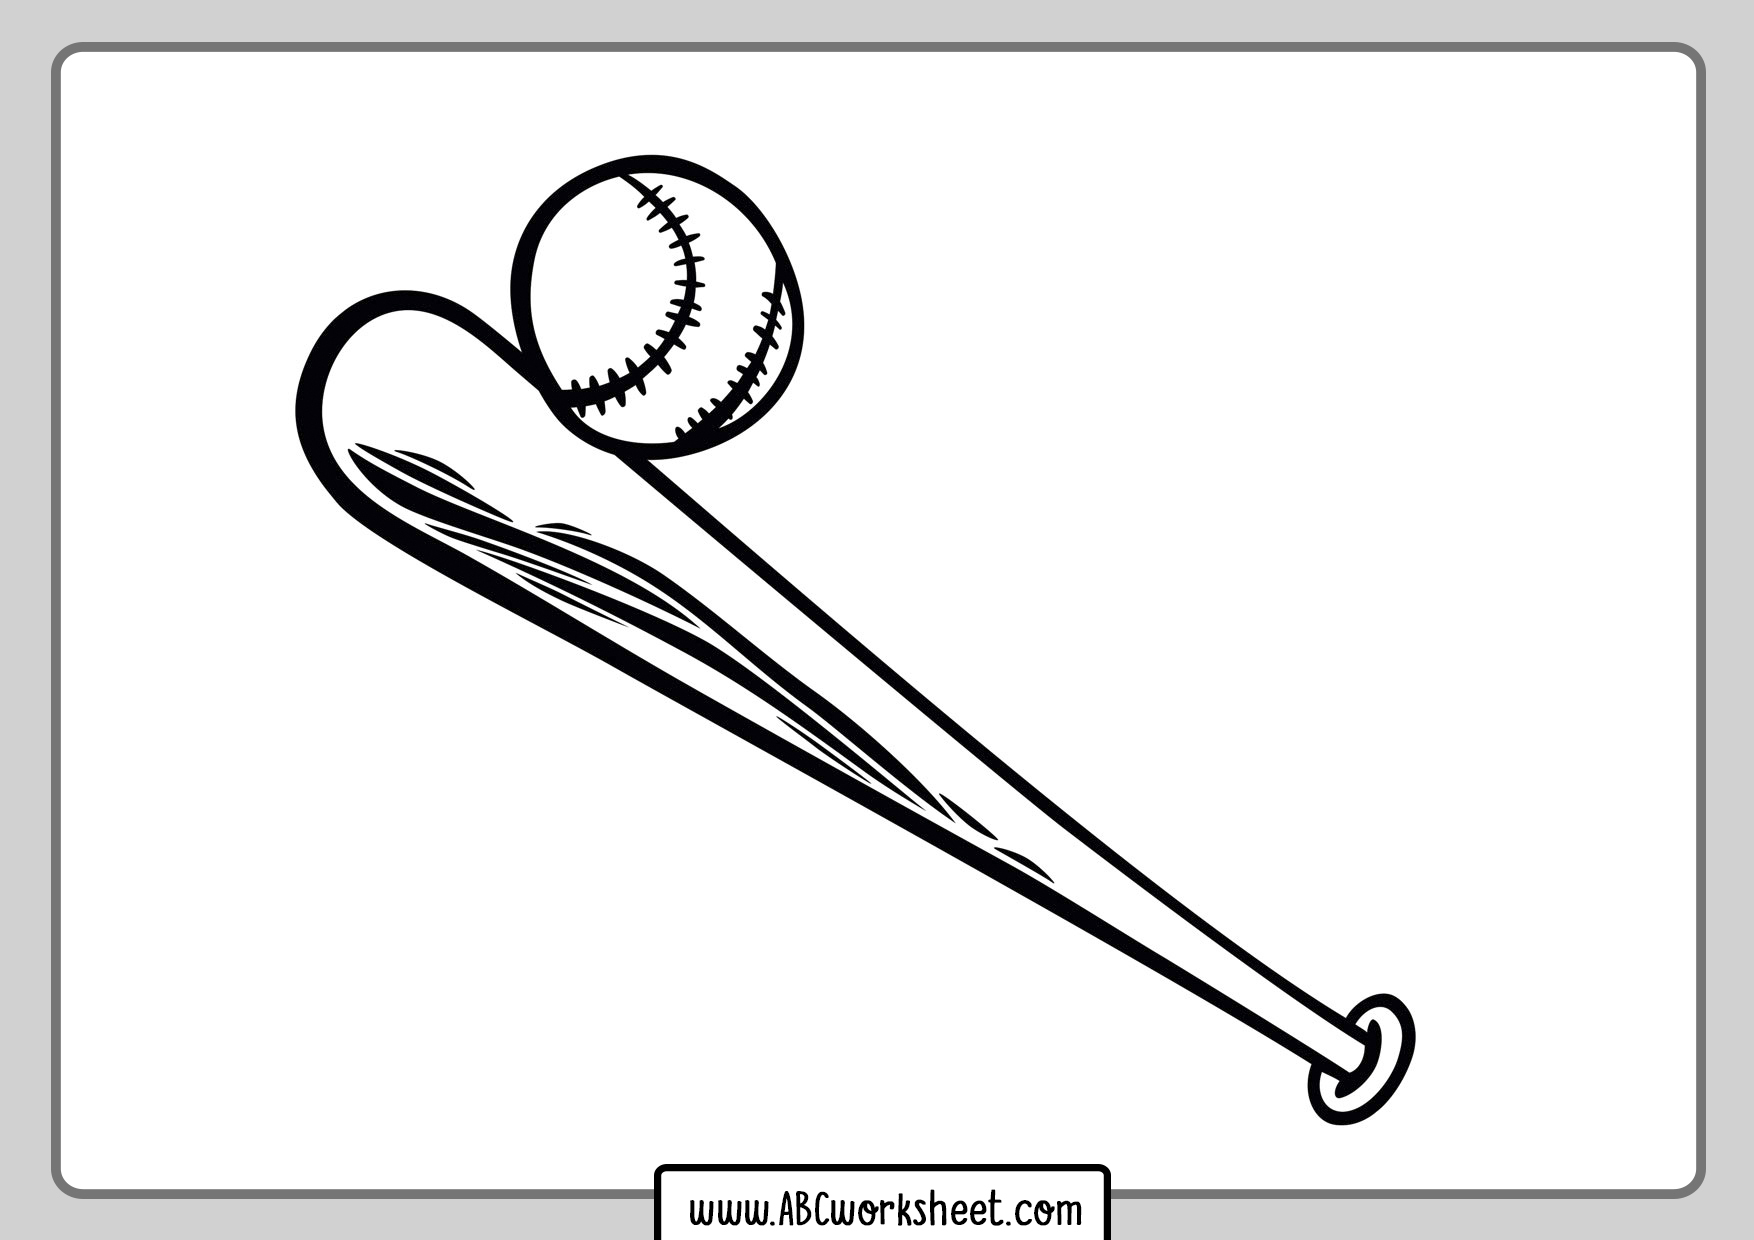 Baseball Bat Coloring Page ABC Worksheet